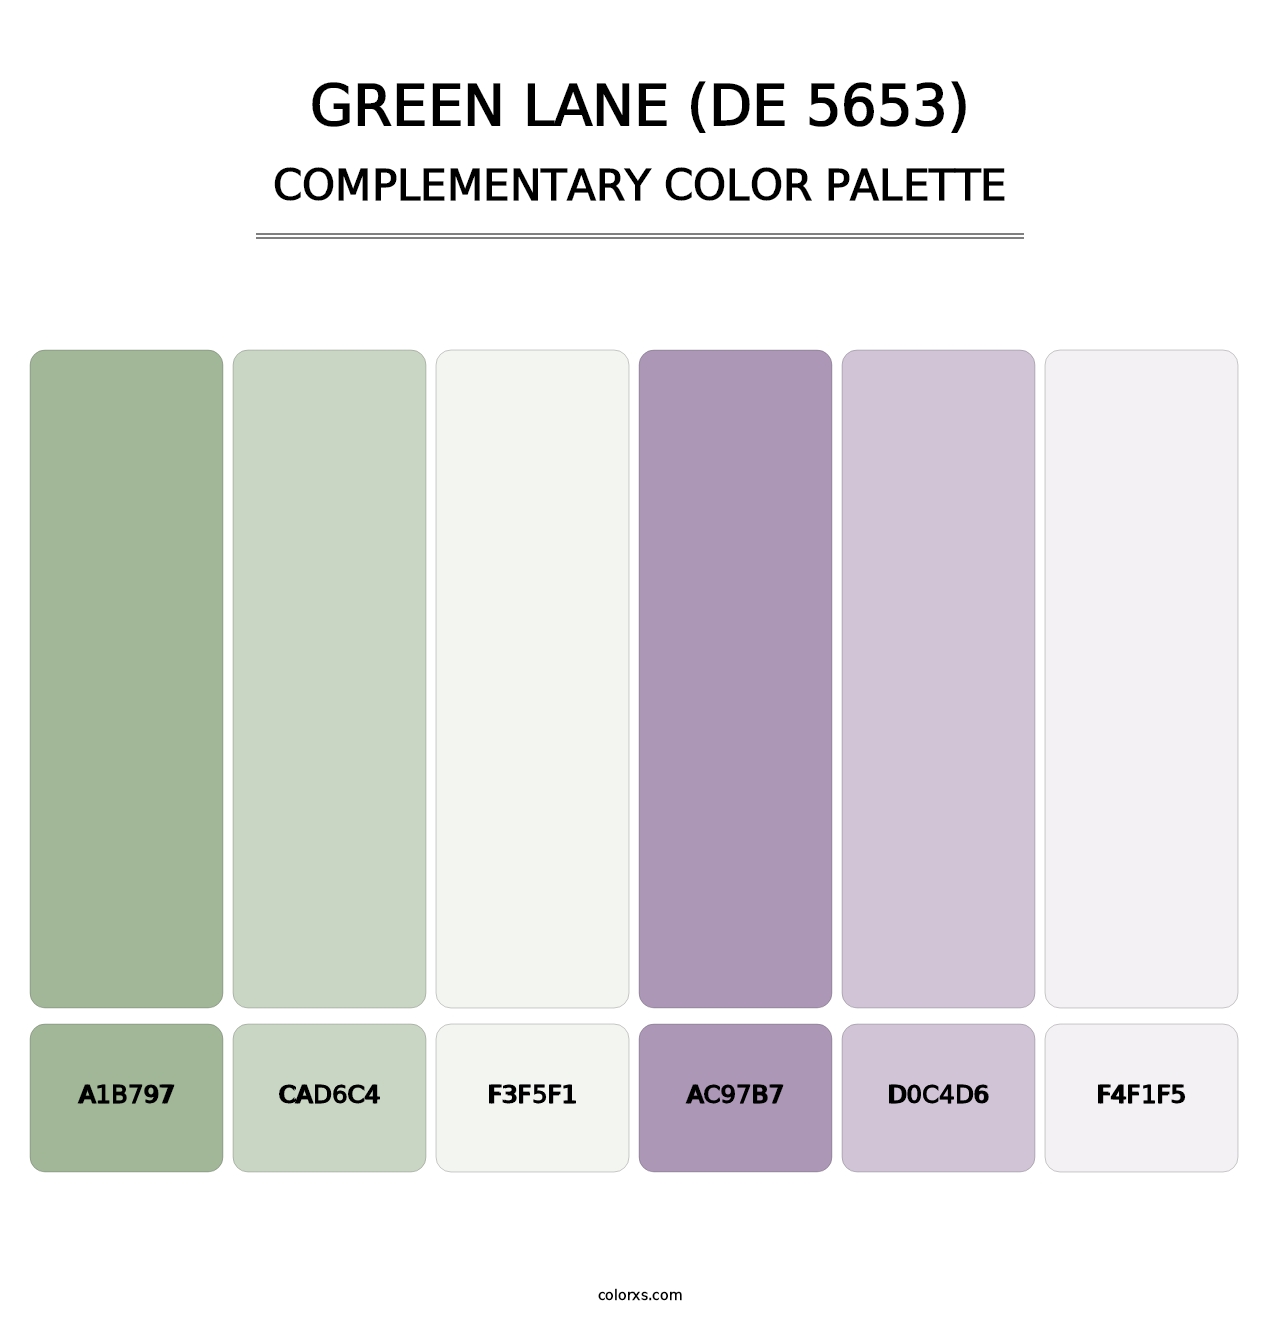 Green Lane (DE 5653) - Complementary Color Palette